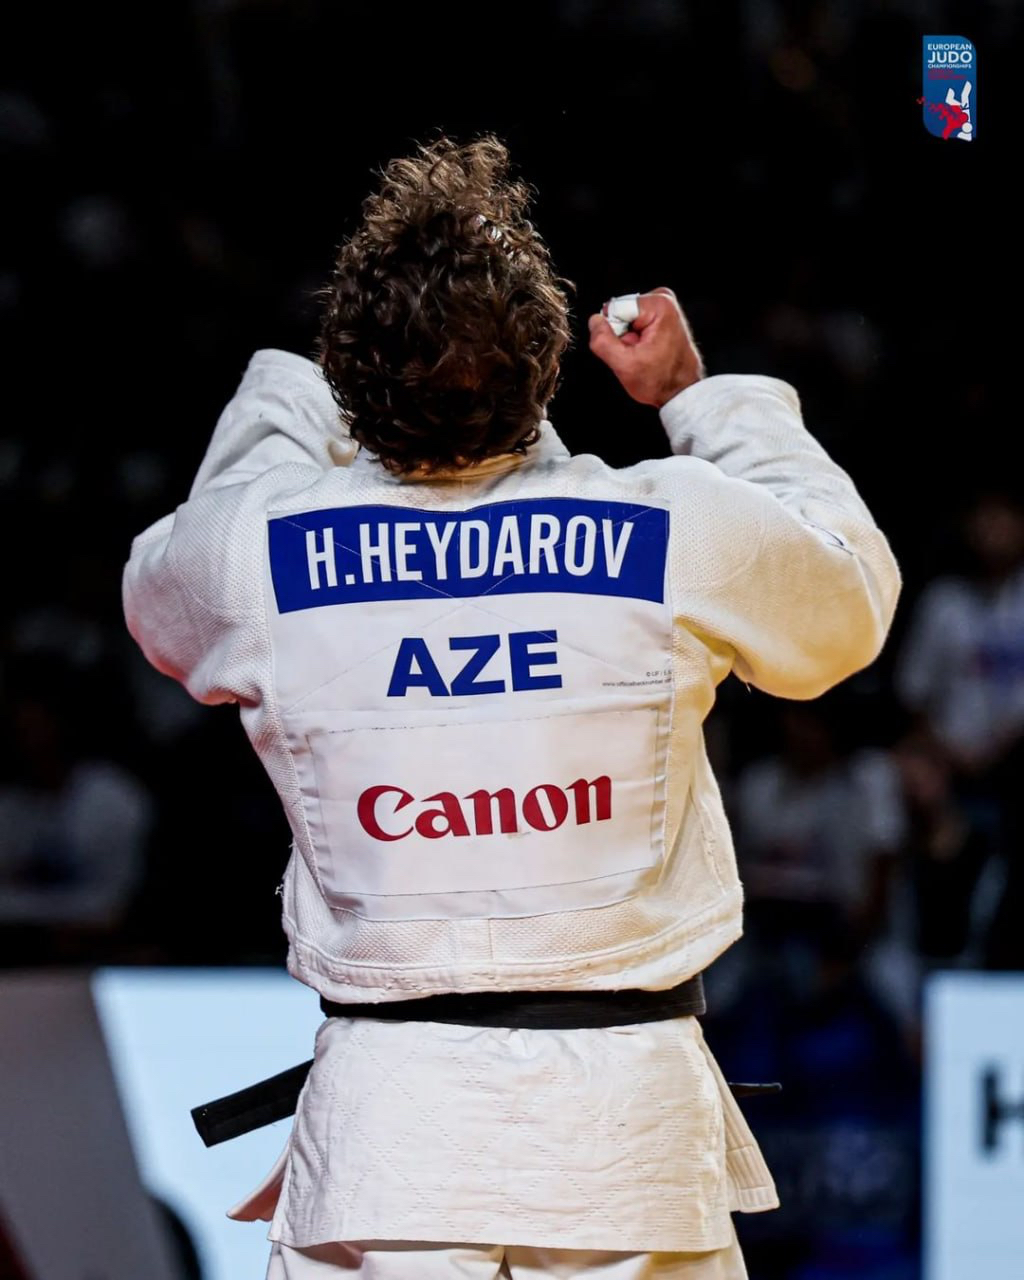 Hidayət Heydərov dördüncü dəfə Avropa çempionu adını qazandı&nbsp;